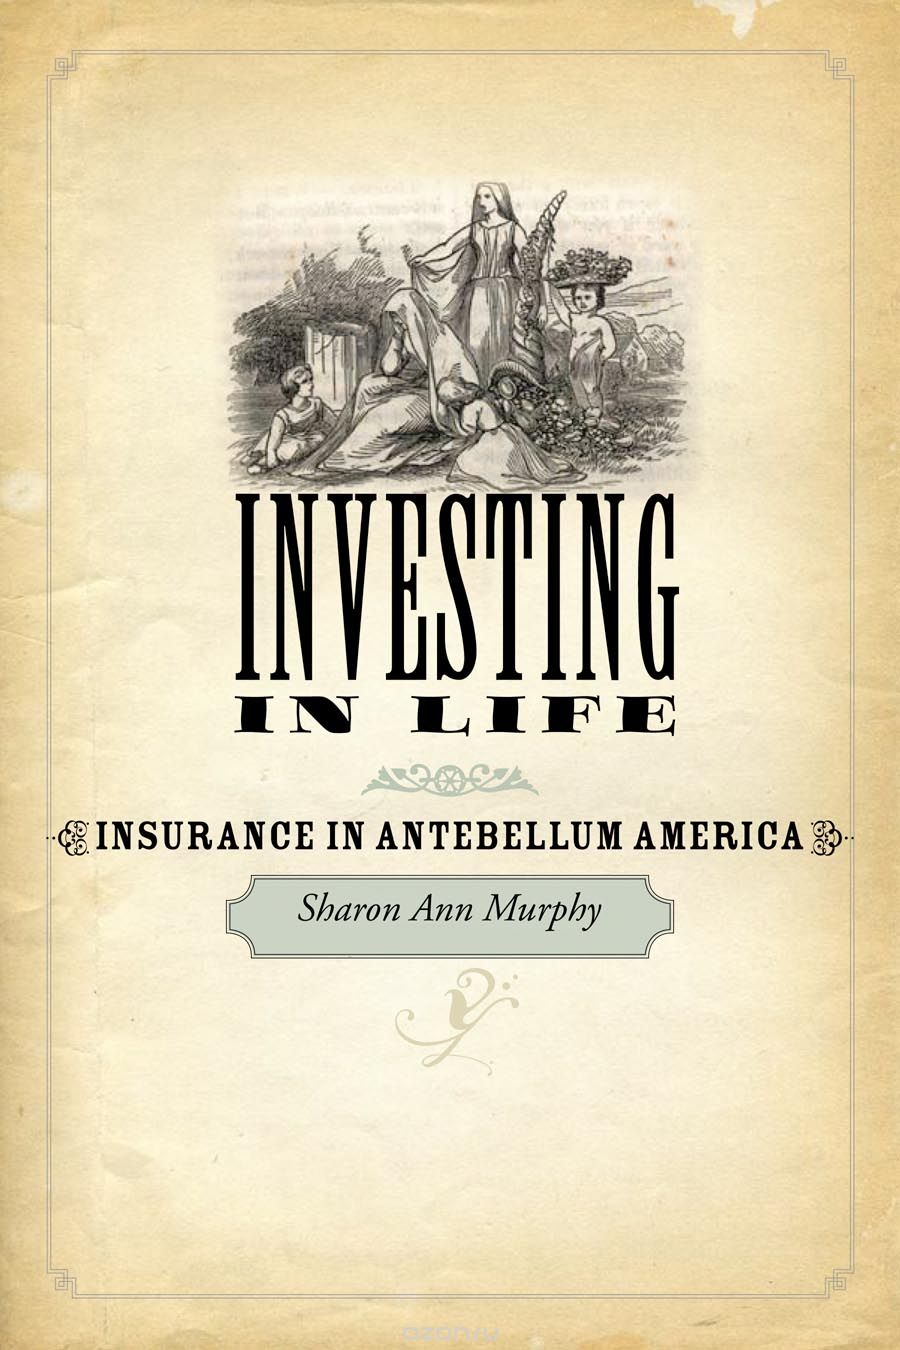 Investing in Life – Insurance in Antebellum America